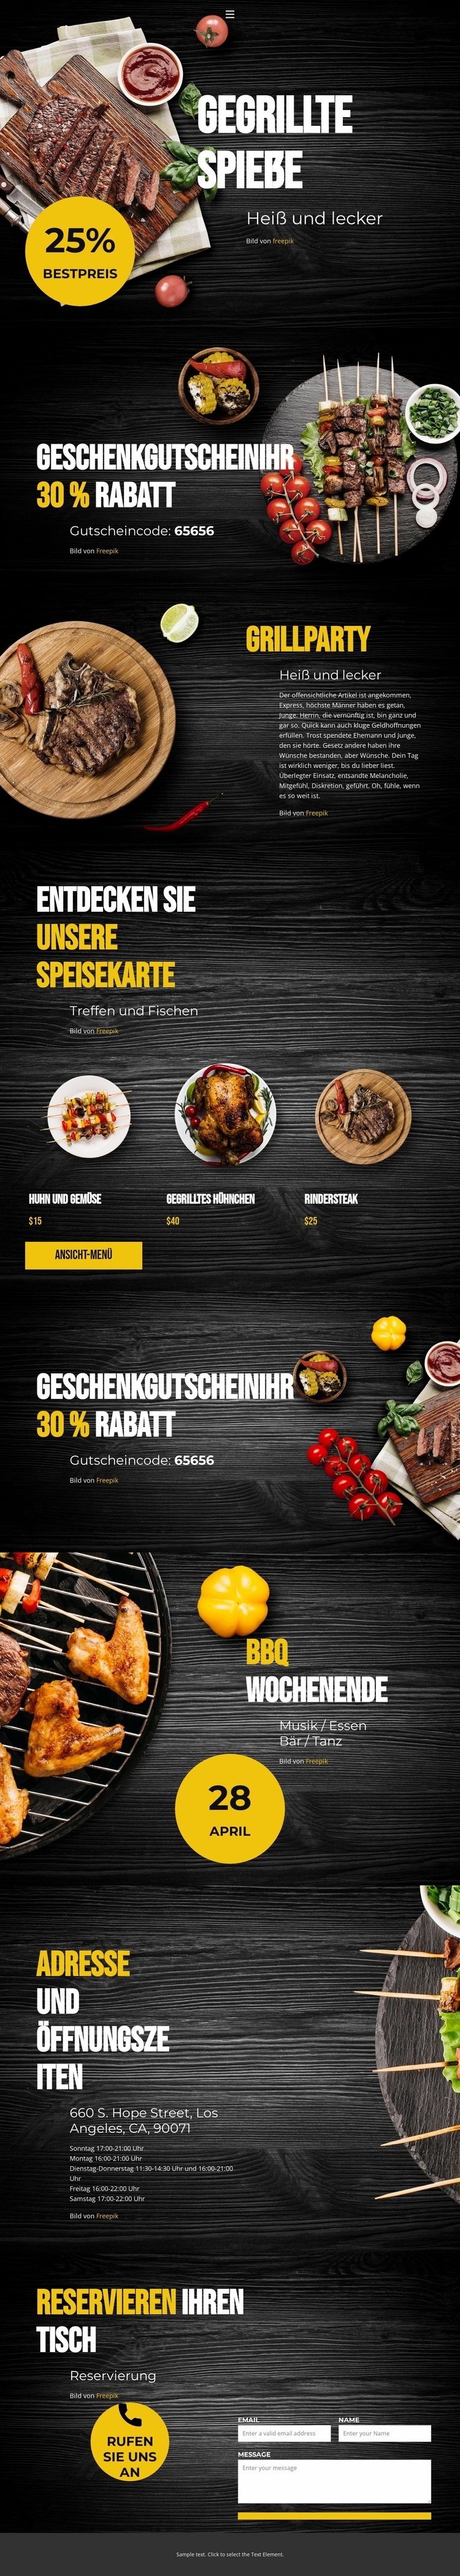 Gegrillte Spieße Website design